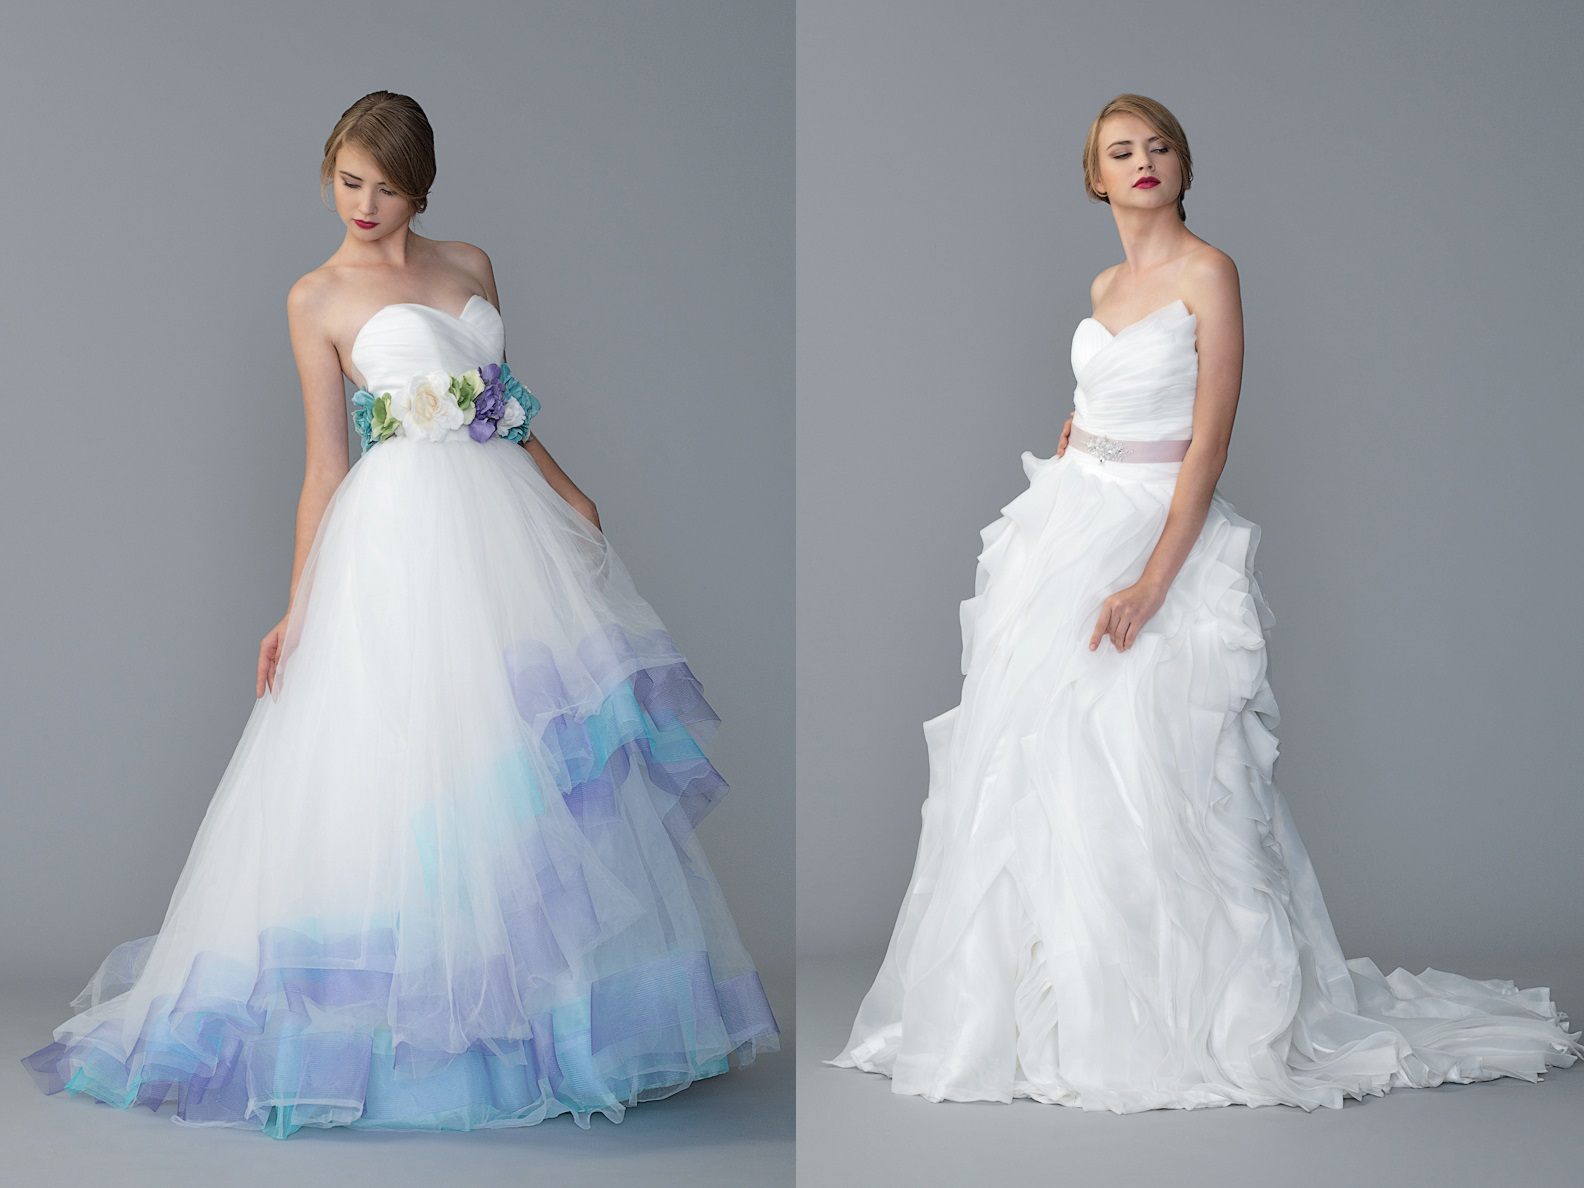 10 chiếc váy cưới đẹp mang tông màu trắng ngọc ngà, trong sáng sẽ giúp bạn có một ngày cưới hoàn hảo. Hãy cùng Marry tham khảo ngay phái đẹp nhé!